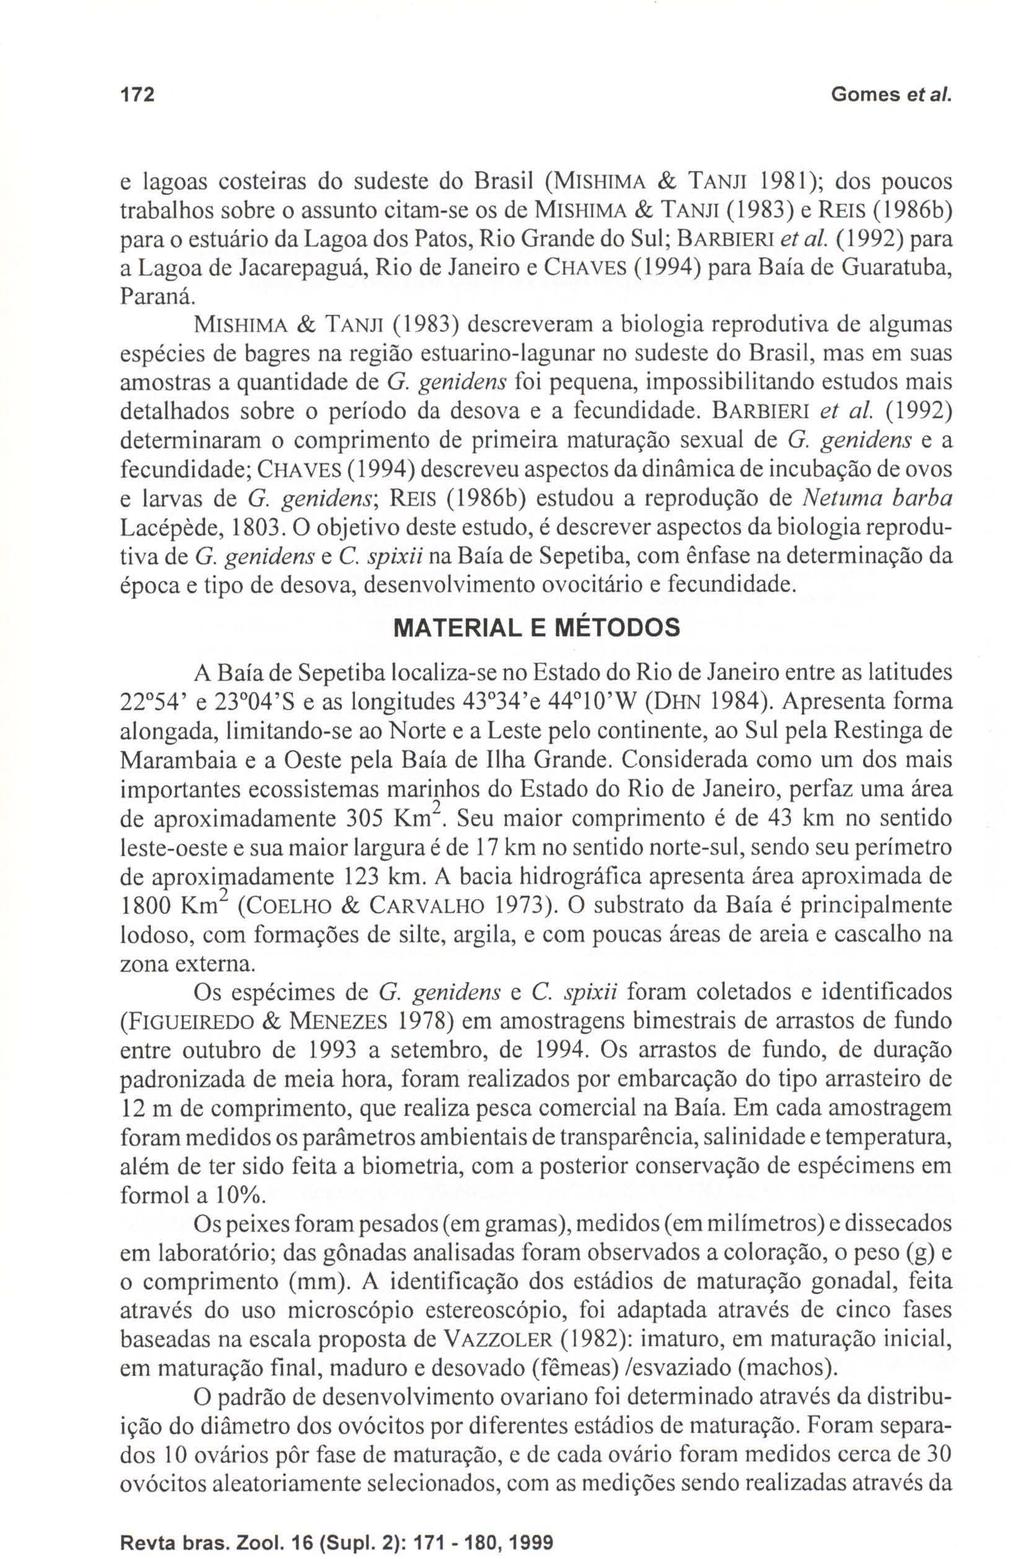 172 Gomes eta/o e lagoas costeiras do sudeste do Brasil (MSHMA & TANJ 1981); dos poucos trabalhos sobre o assunto citam-se os de MSHMA & TANJ (1983) e RES (1986b) para o estuário da Lagoa dos Patos,